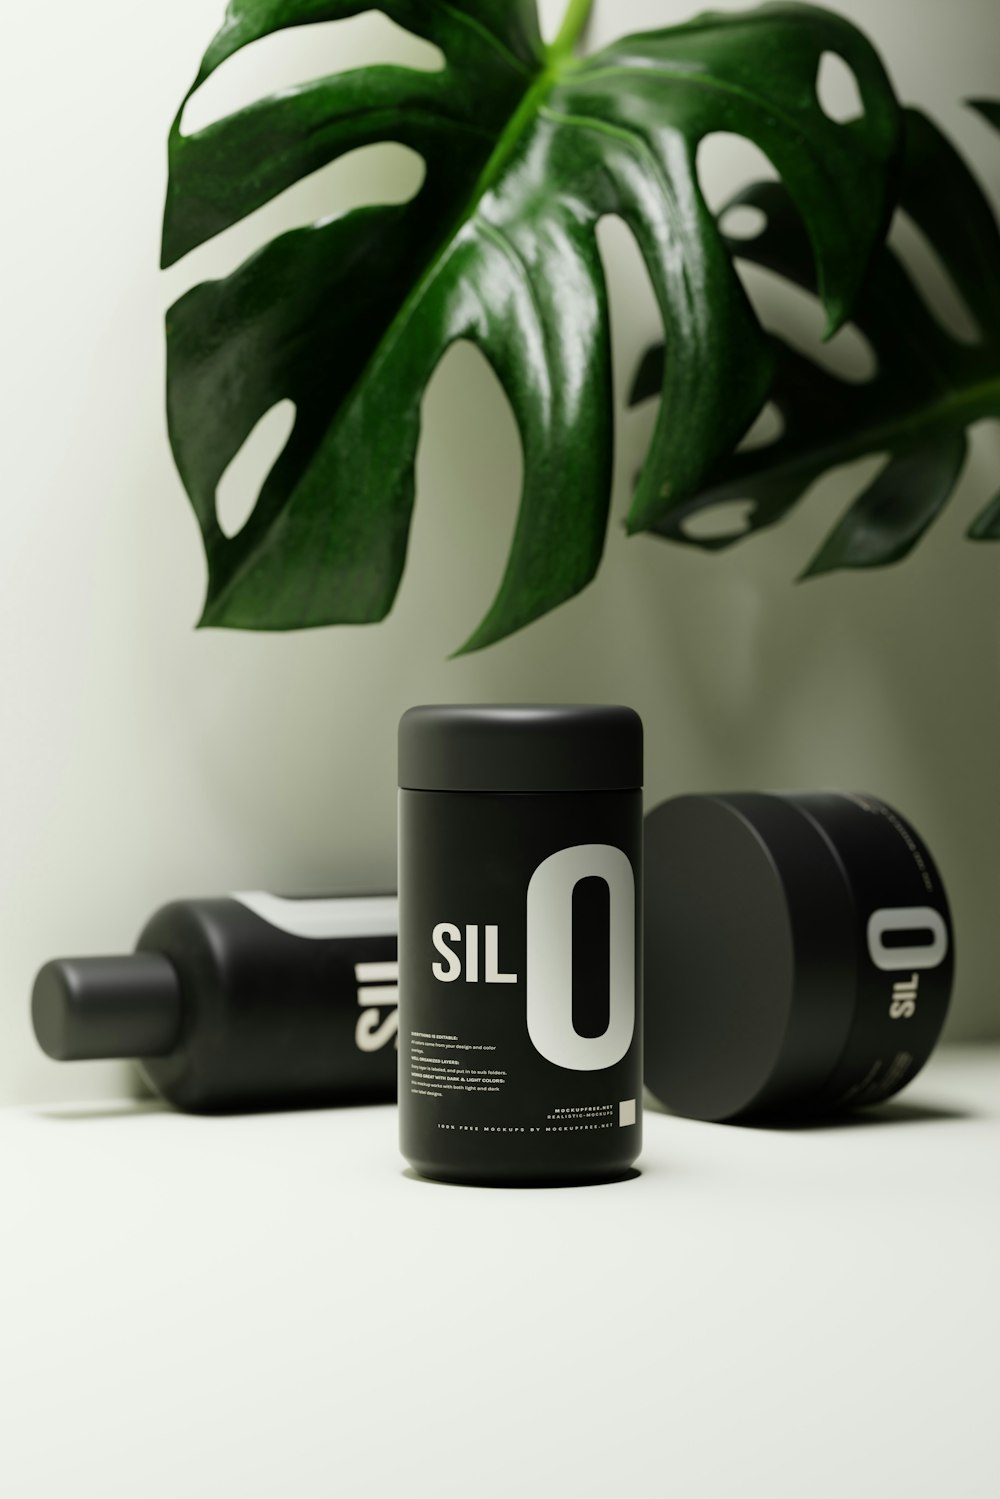 Una bottiglia di SIL 0 è accanto a una lattina di SIL 0